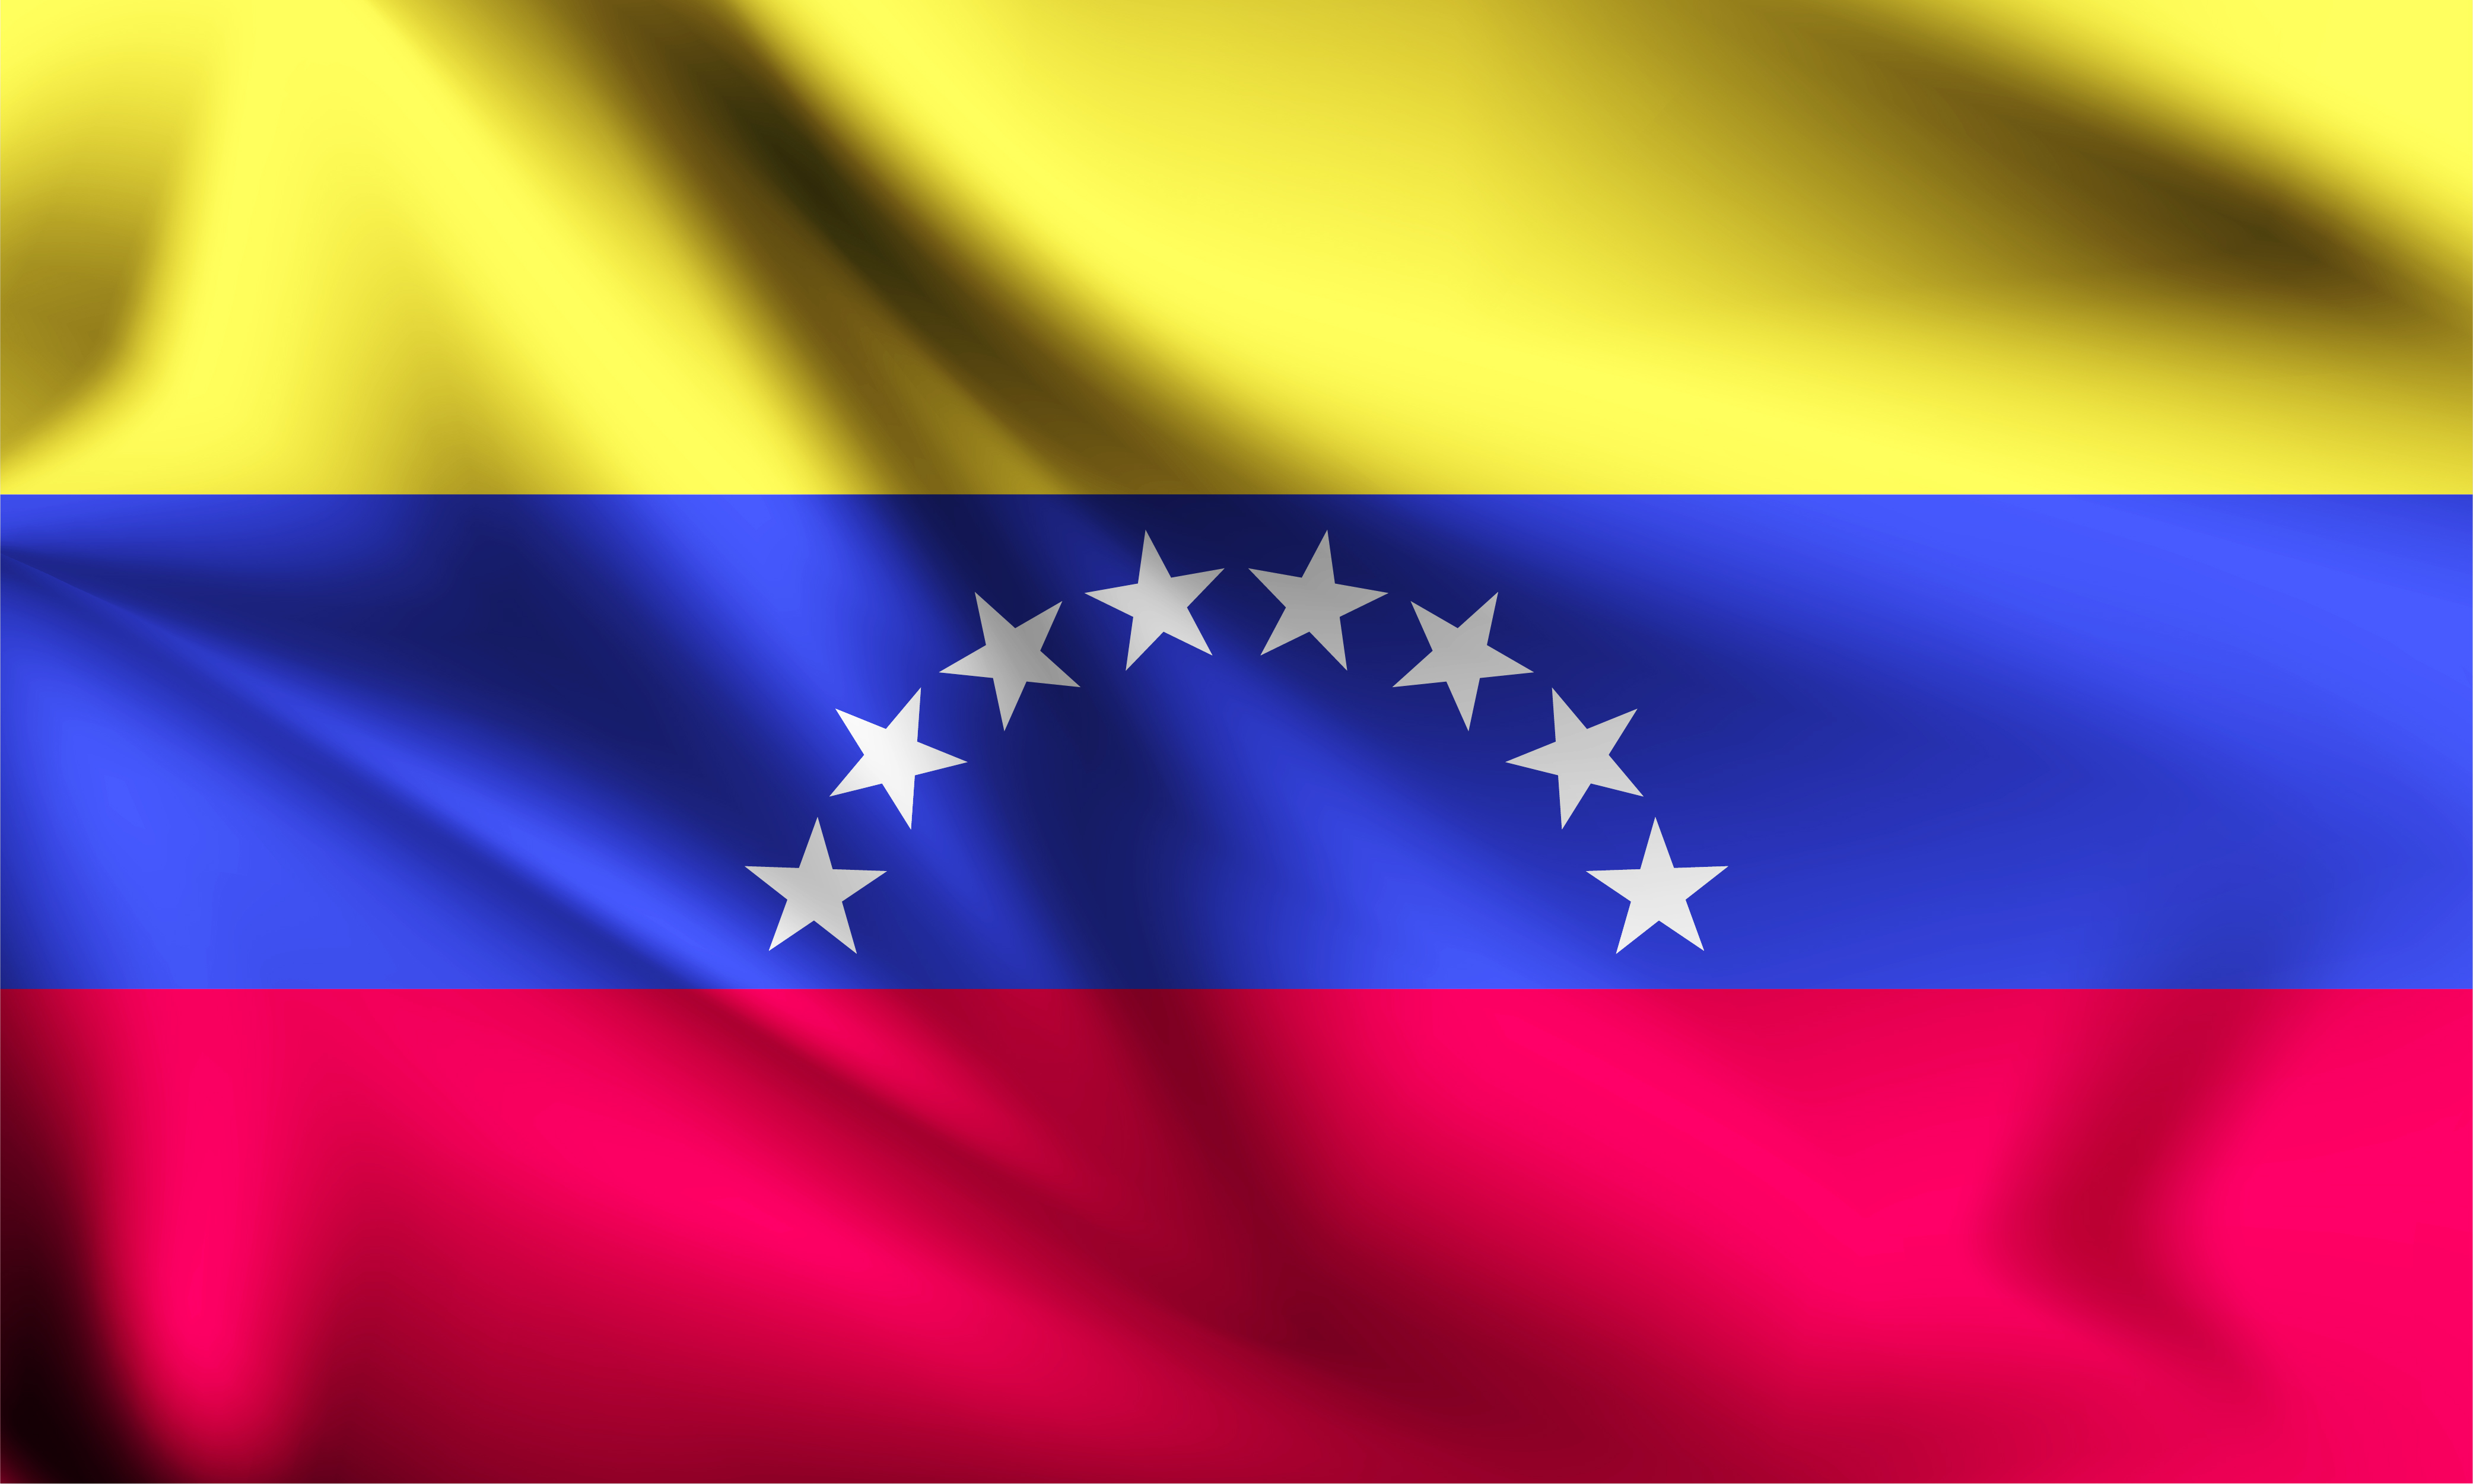 Bandera de colombia y venezuela